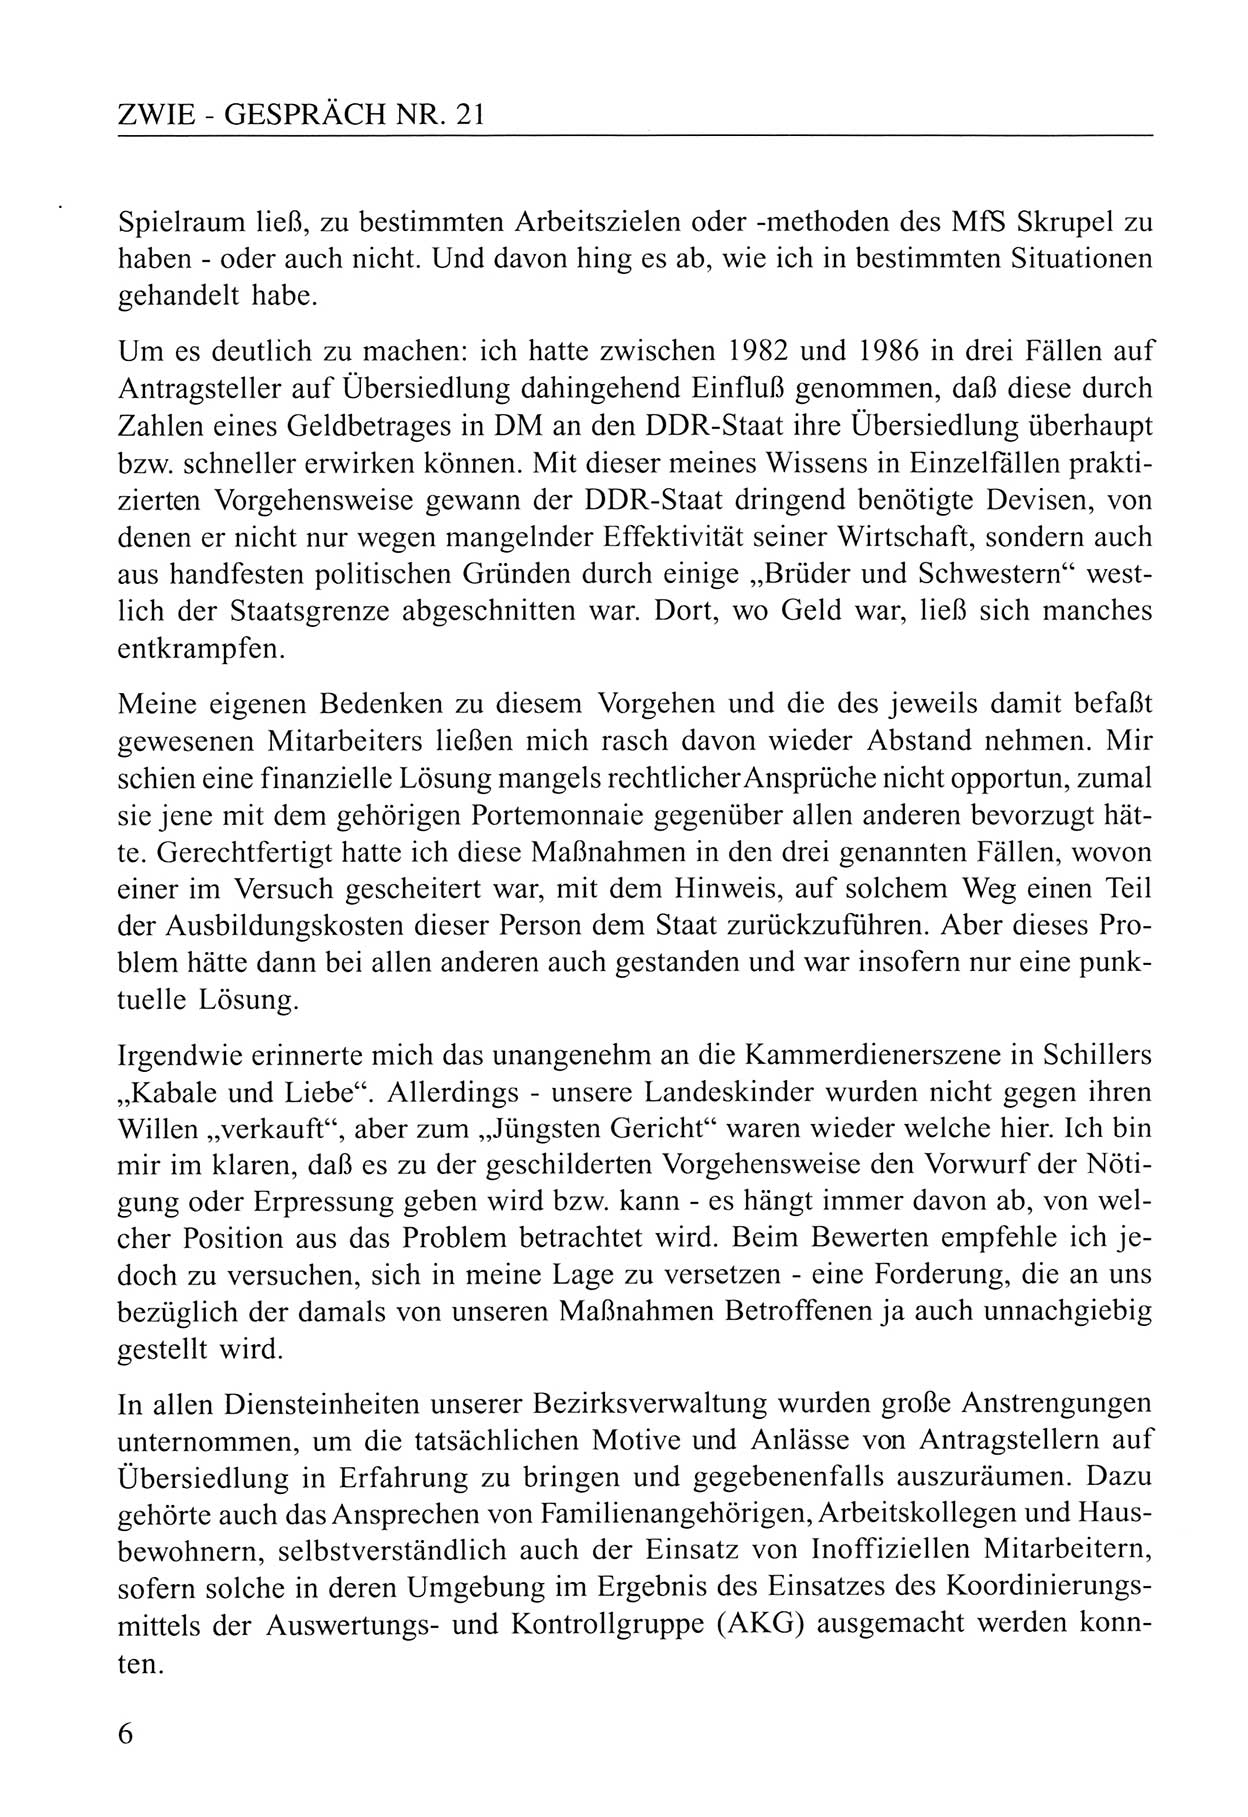 Zwie-Gespräch, Beiträge zum Umgang mit der Staatssicherheits-Vergangenheit [Deutsche Demokratische Republik (DDR)], Ausgabe Nr. 21, Berlin 1994, Seite 6 (Zwie-Gespr. Ausg. 21 1994, S. 6)